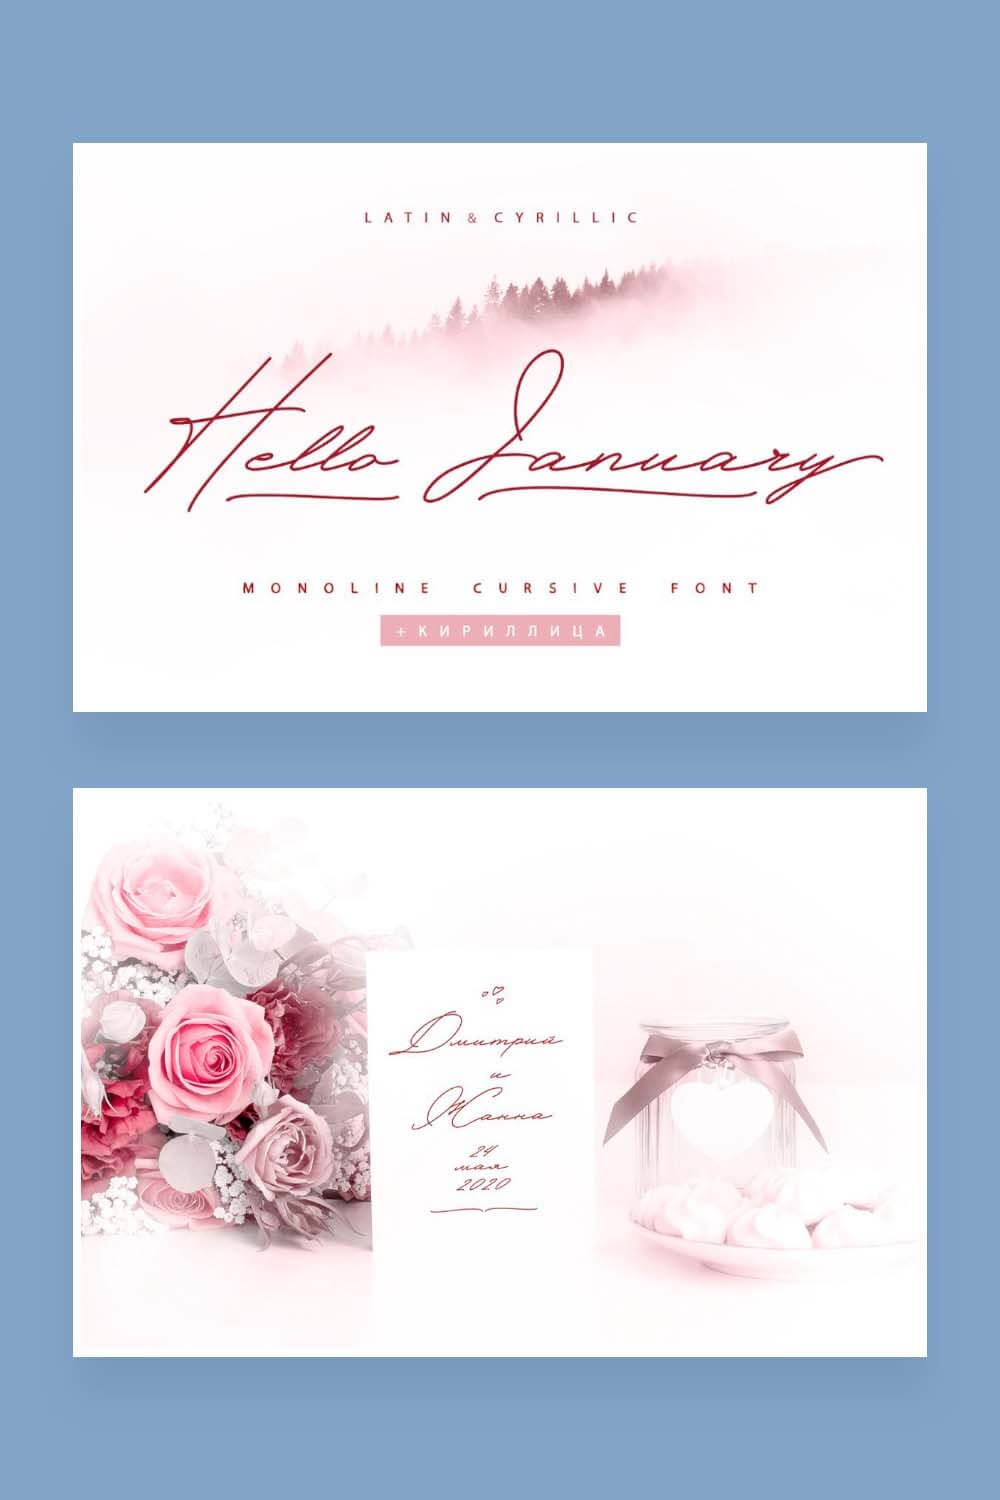 Inscription: Hello January, Monoline cursive font, bridal bouquet.